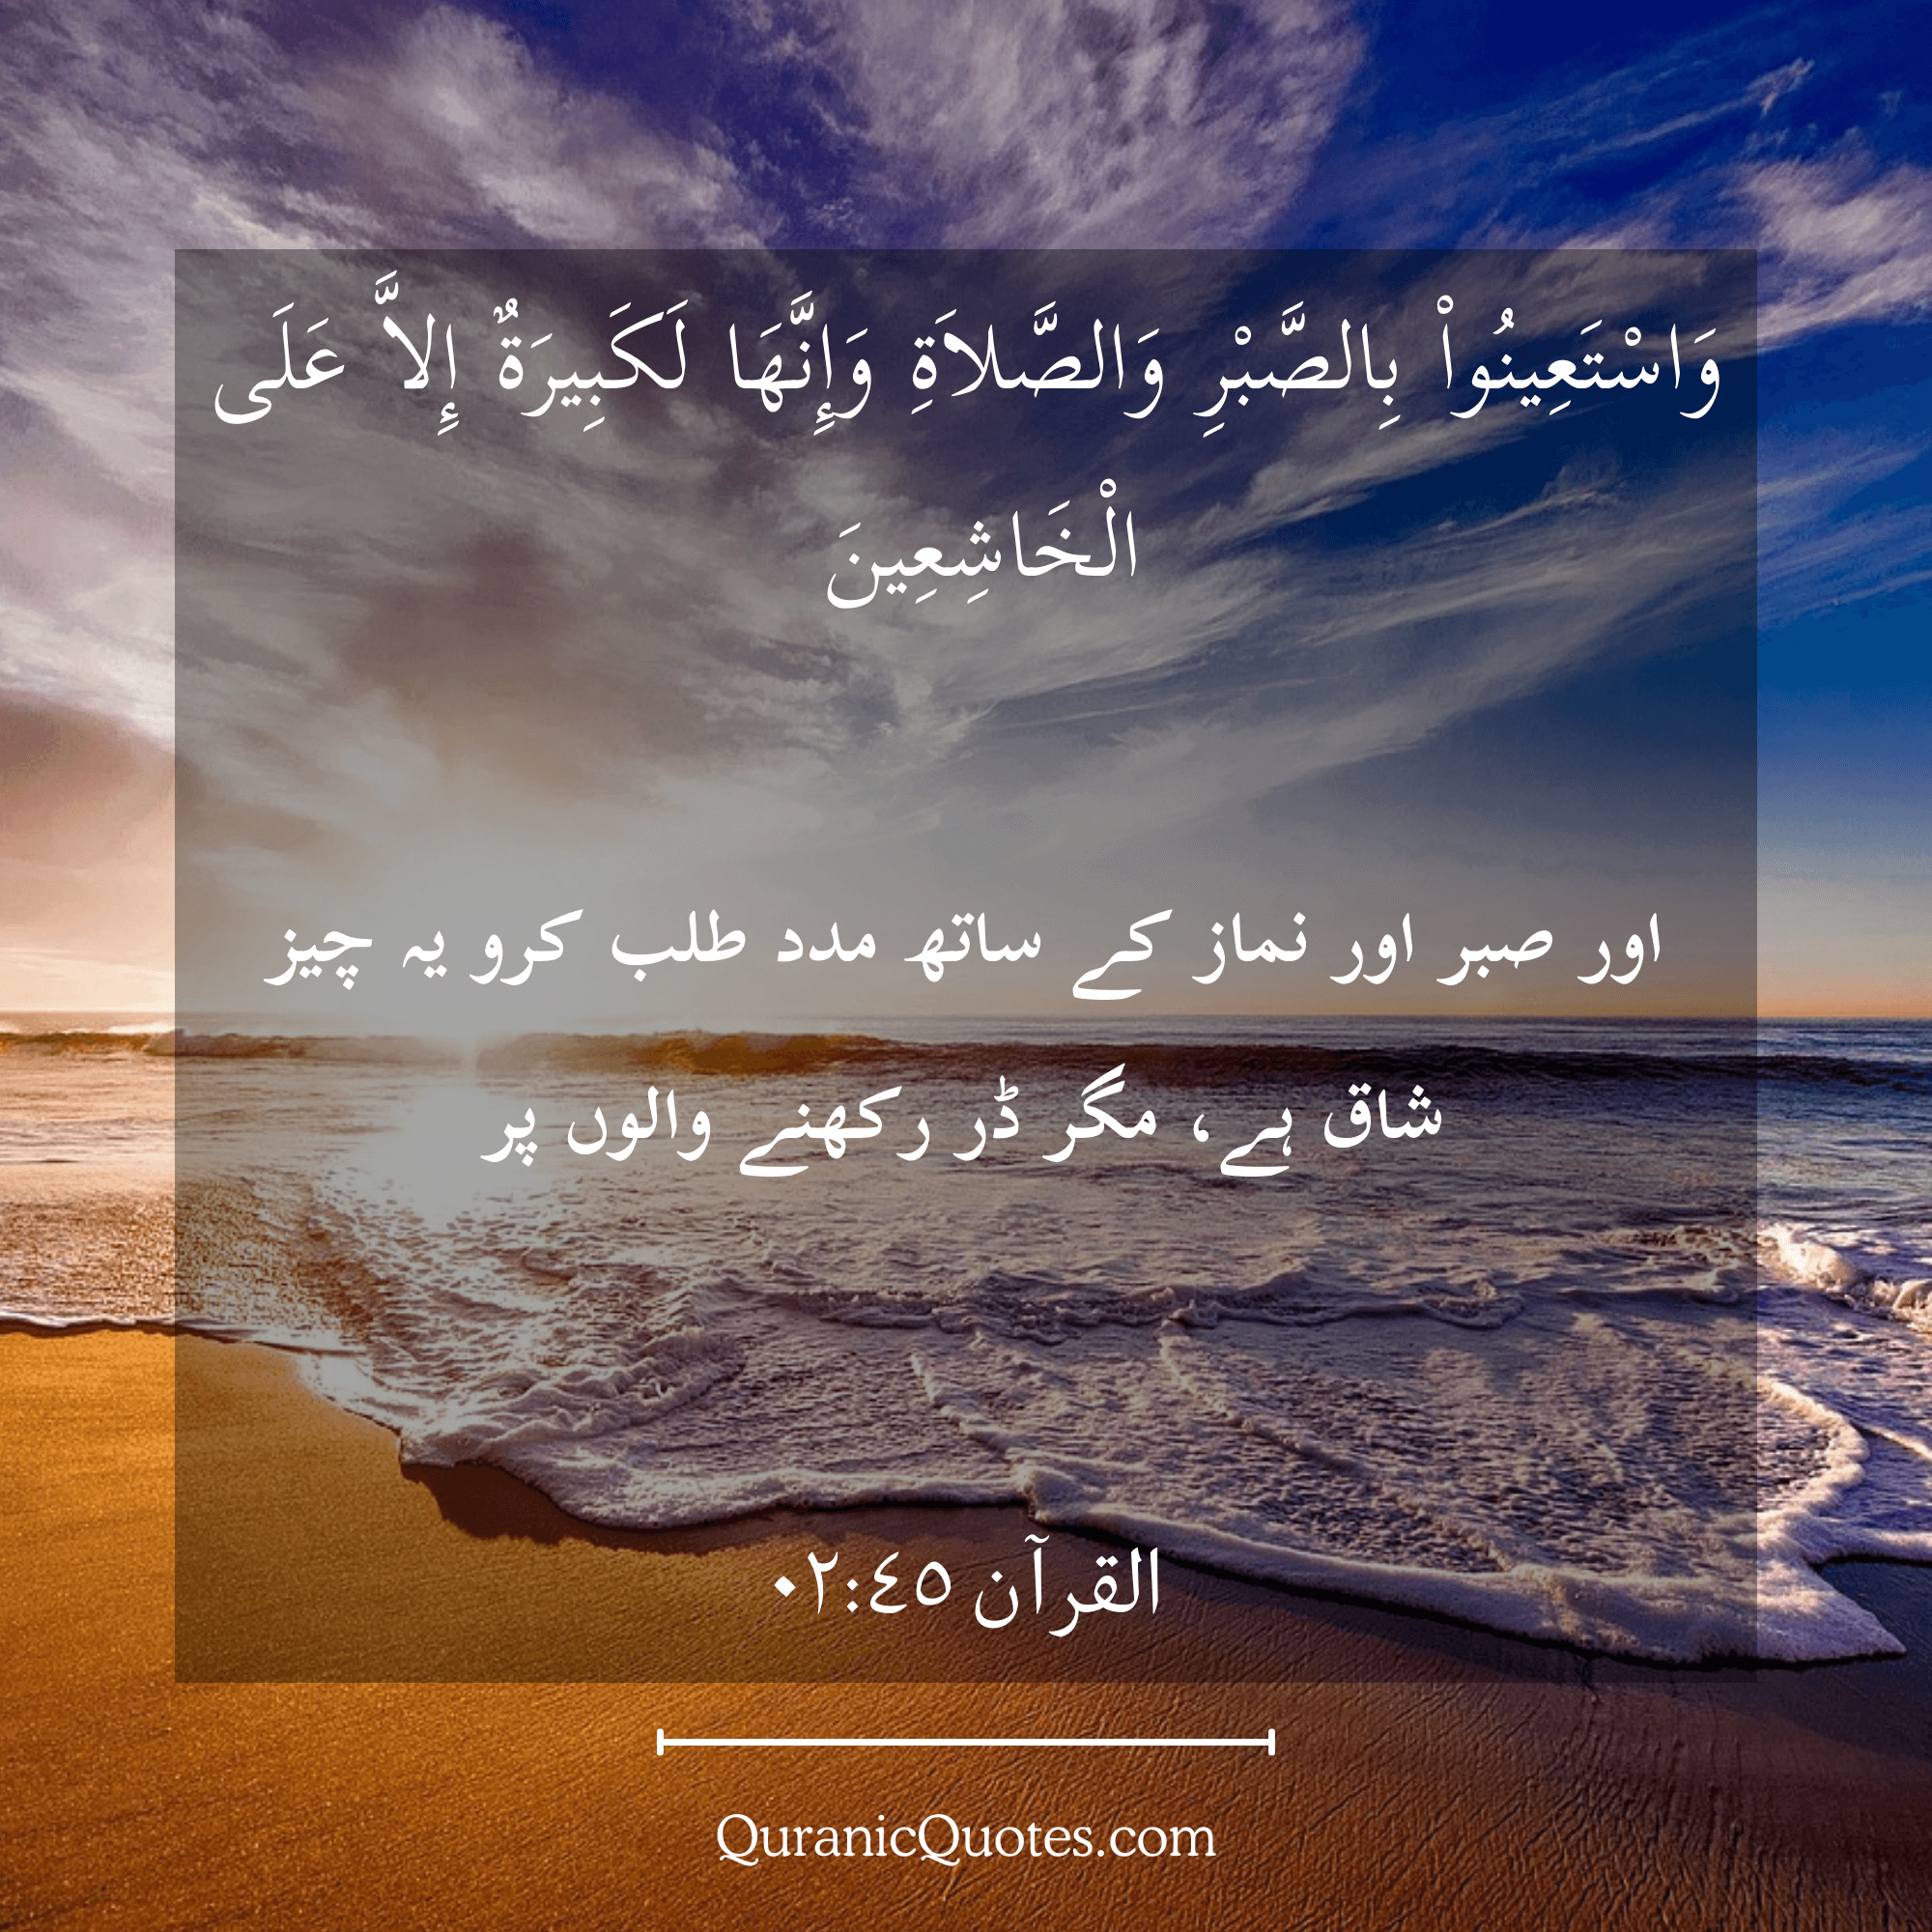 Quranic Quotes in Urdu 506